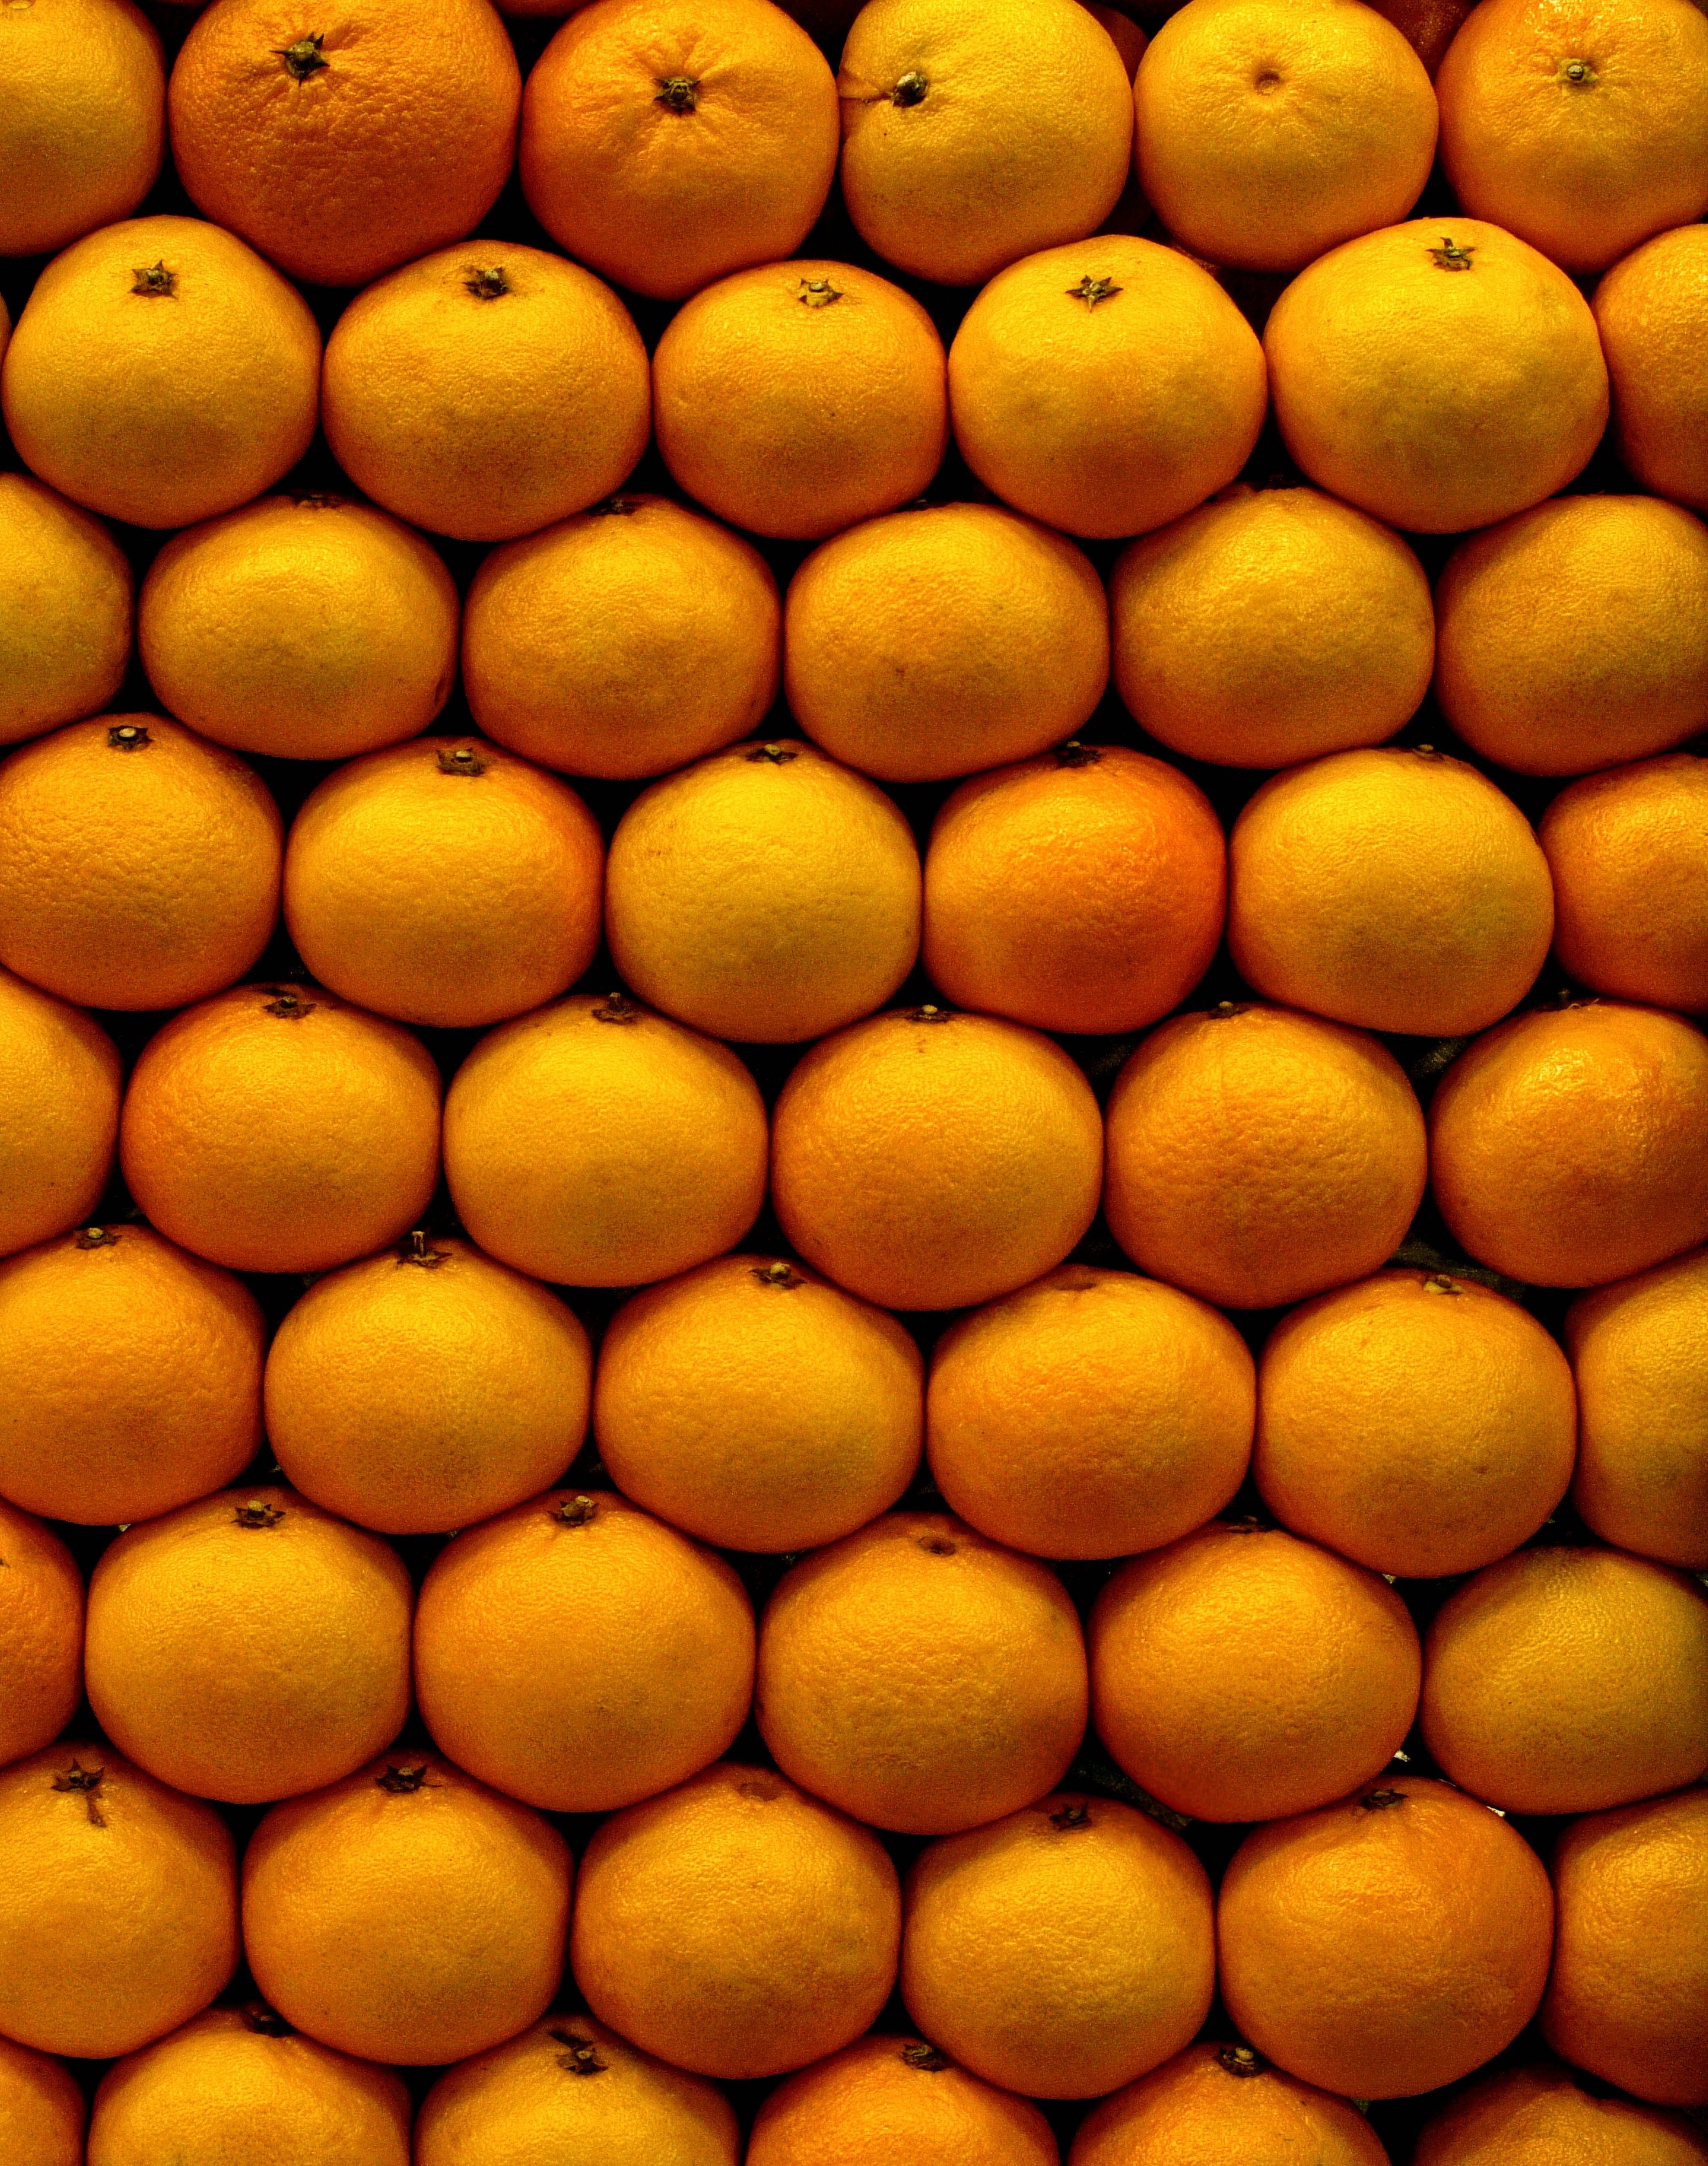 fruits, food, oranges, tangerines, citrus, ripe